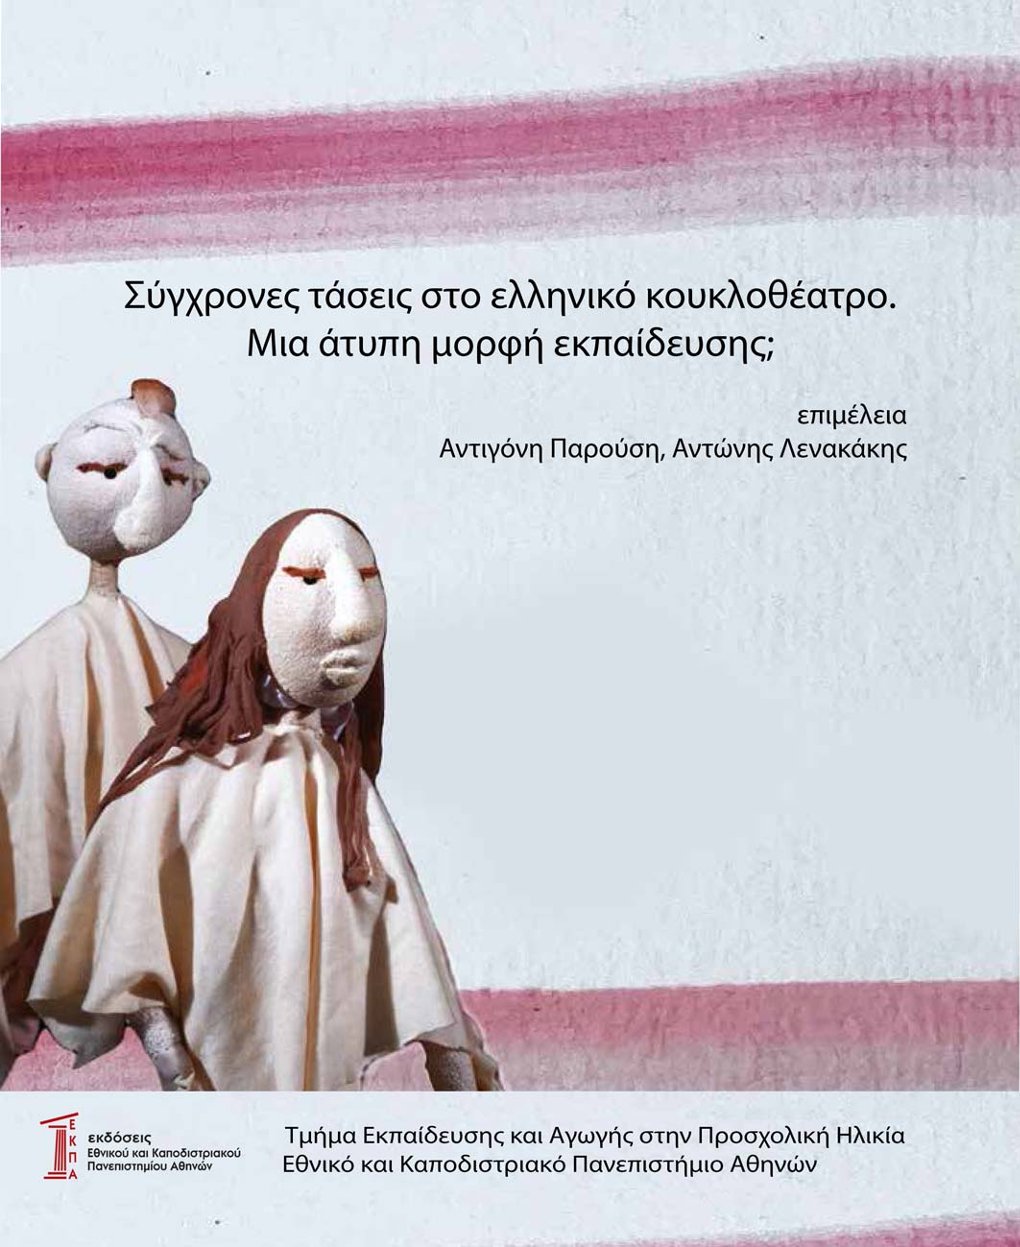 Εκδόσεις: "Σύγχρονες τάσεις στο Ελληνικό Κουκλοθέατρο. Μια άτυπη μορφή εκπαίδευσης;"